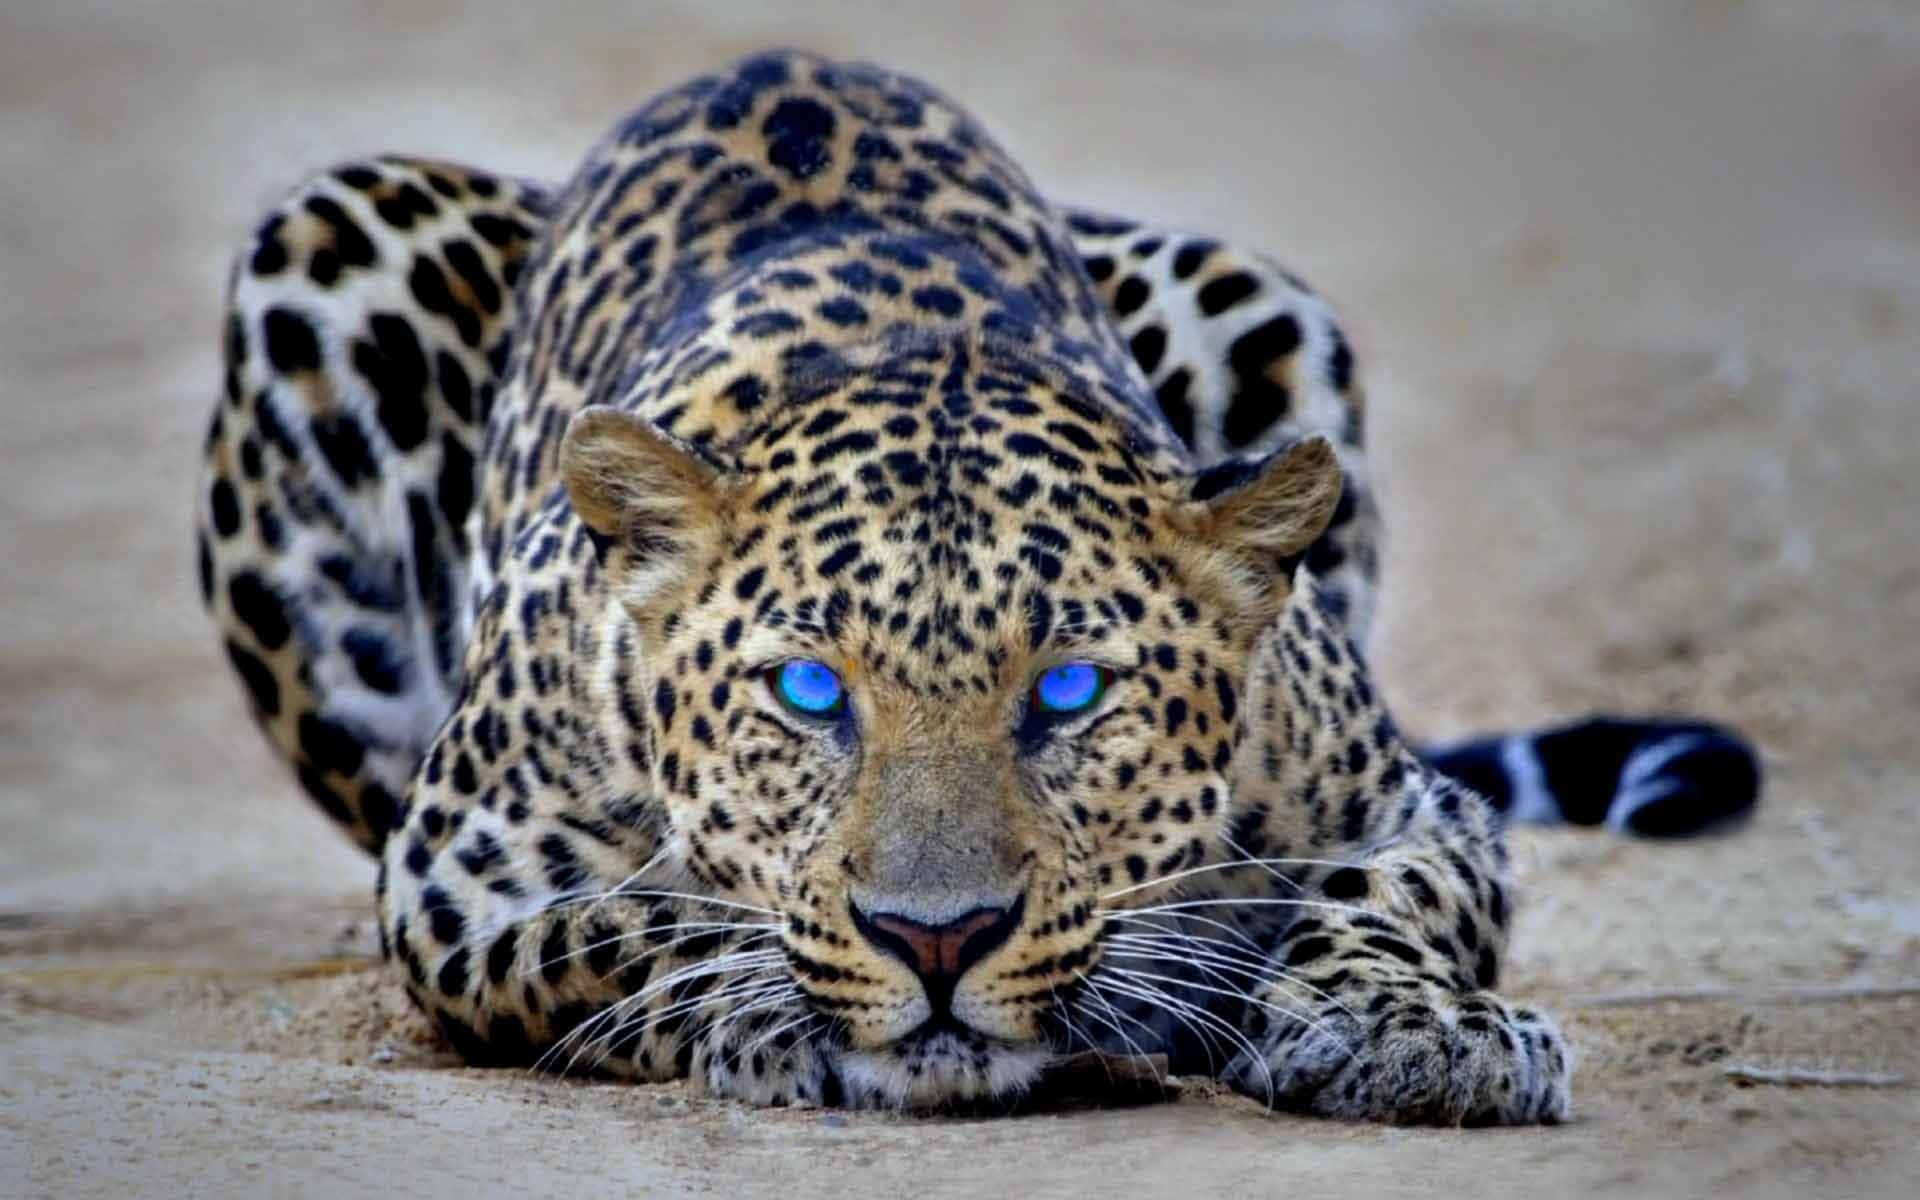 Serene Cheetah Relaxing in its Natural Habitat Wallpaper